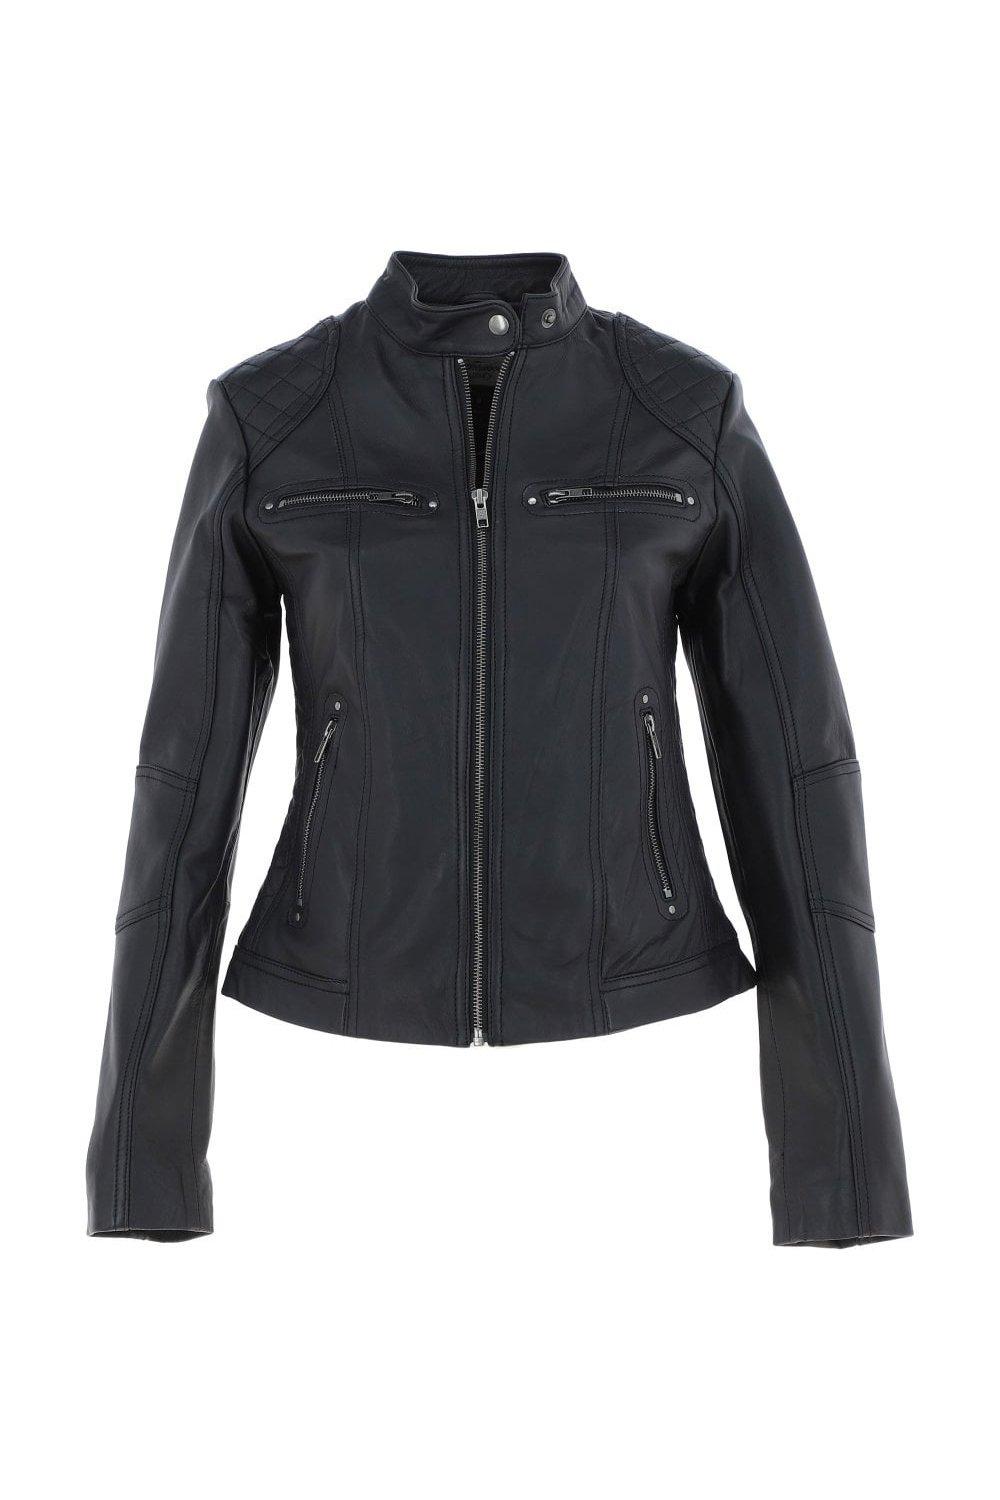 Модная куртка в байкерском стиле из натуральной кожи Donna Milano Ashwood Leather, черный leather jacket ad milano куртки из натуральной кожи узкого покроя